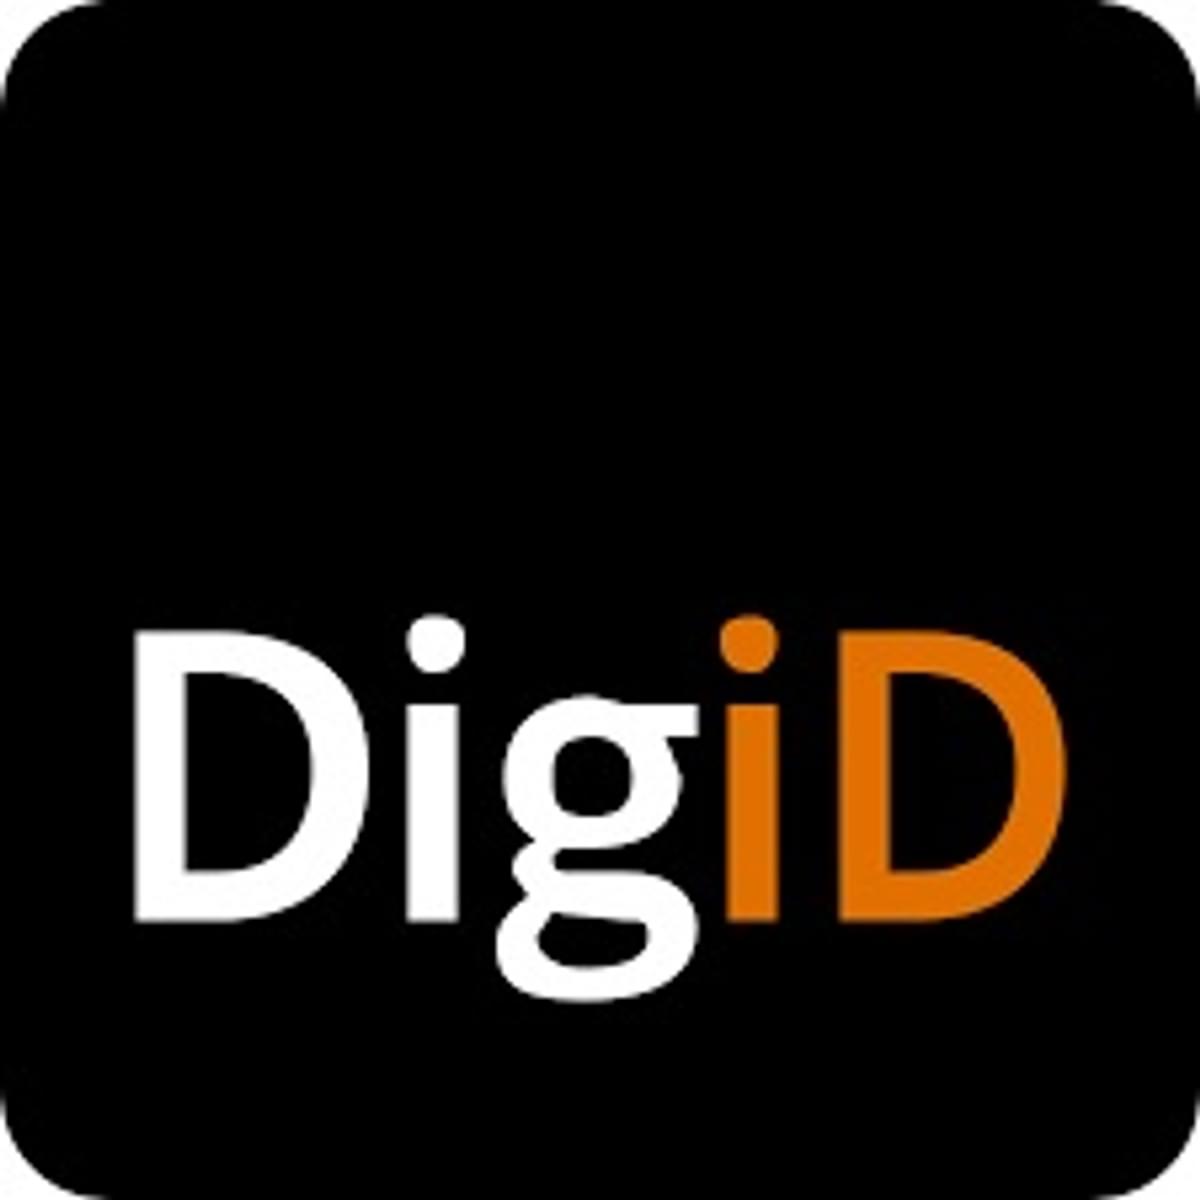 DigiD app met ID-check vaker in de zorg vereist image